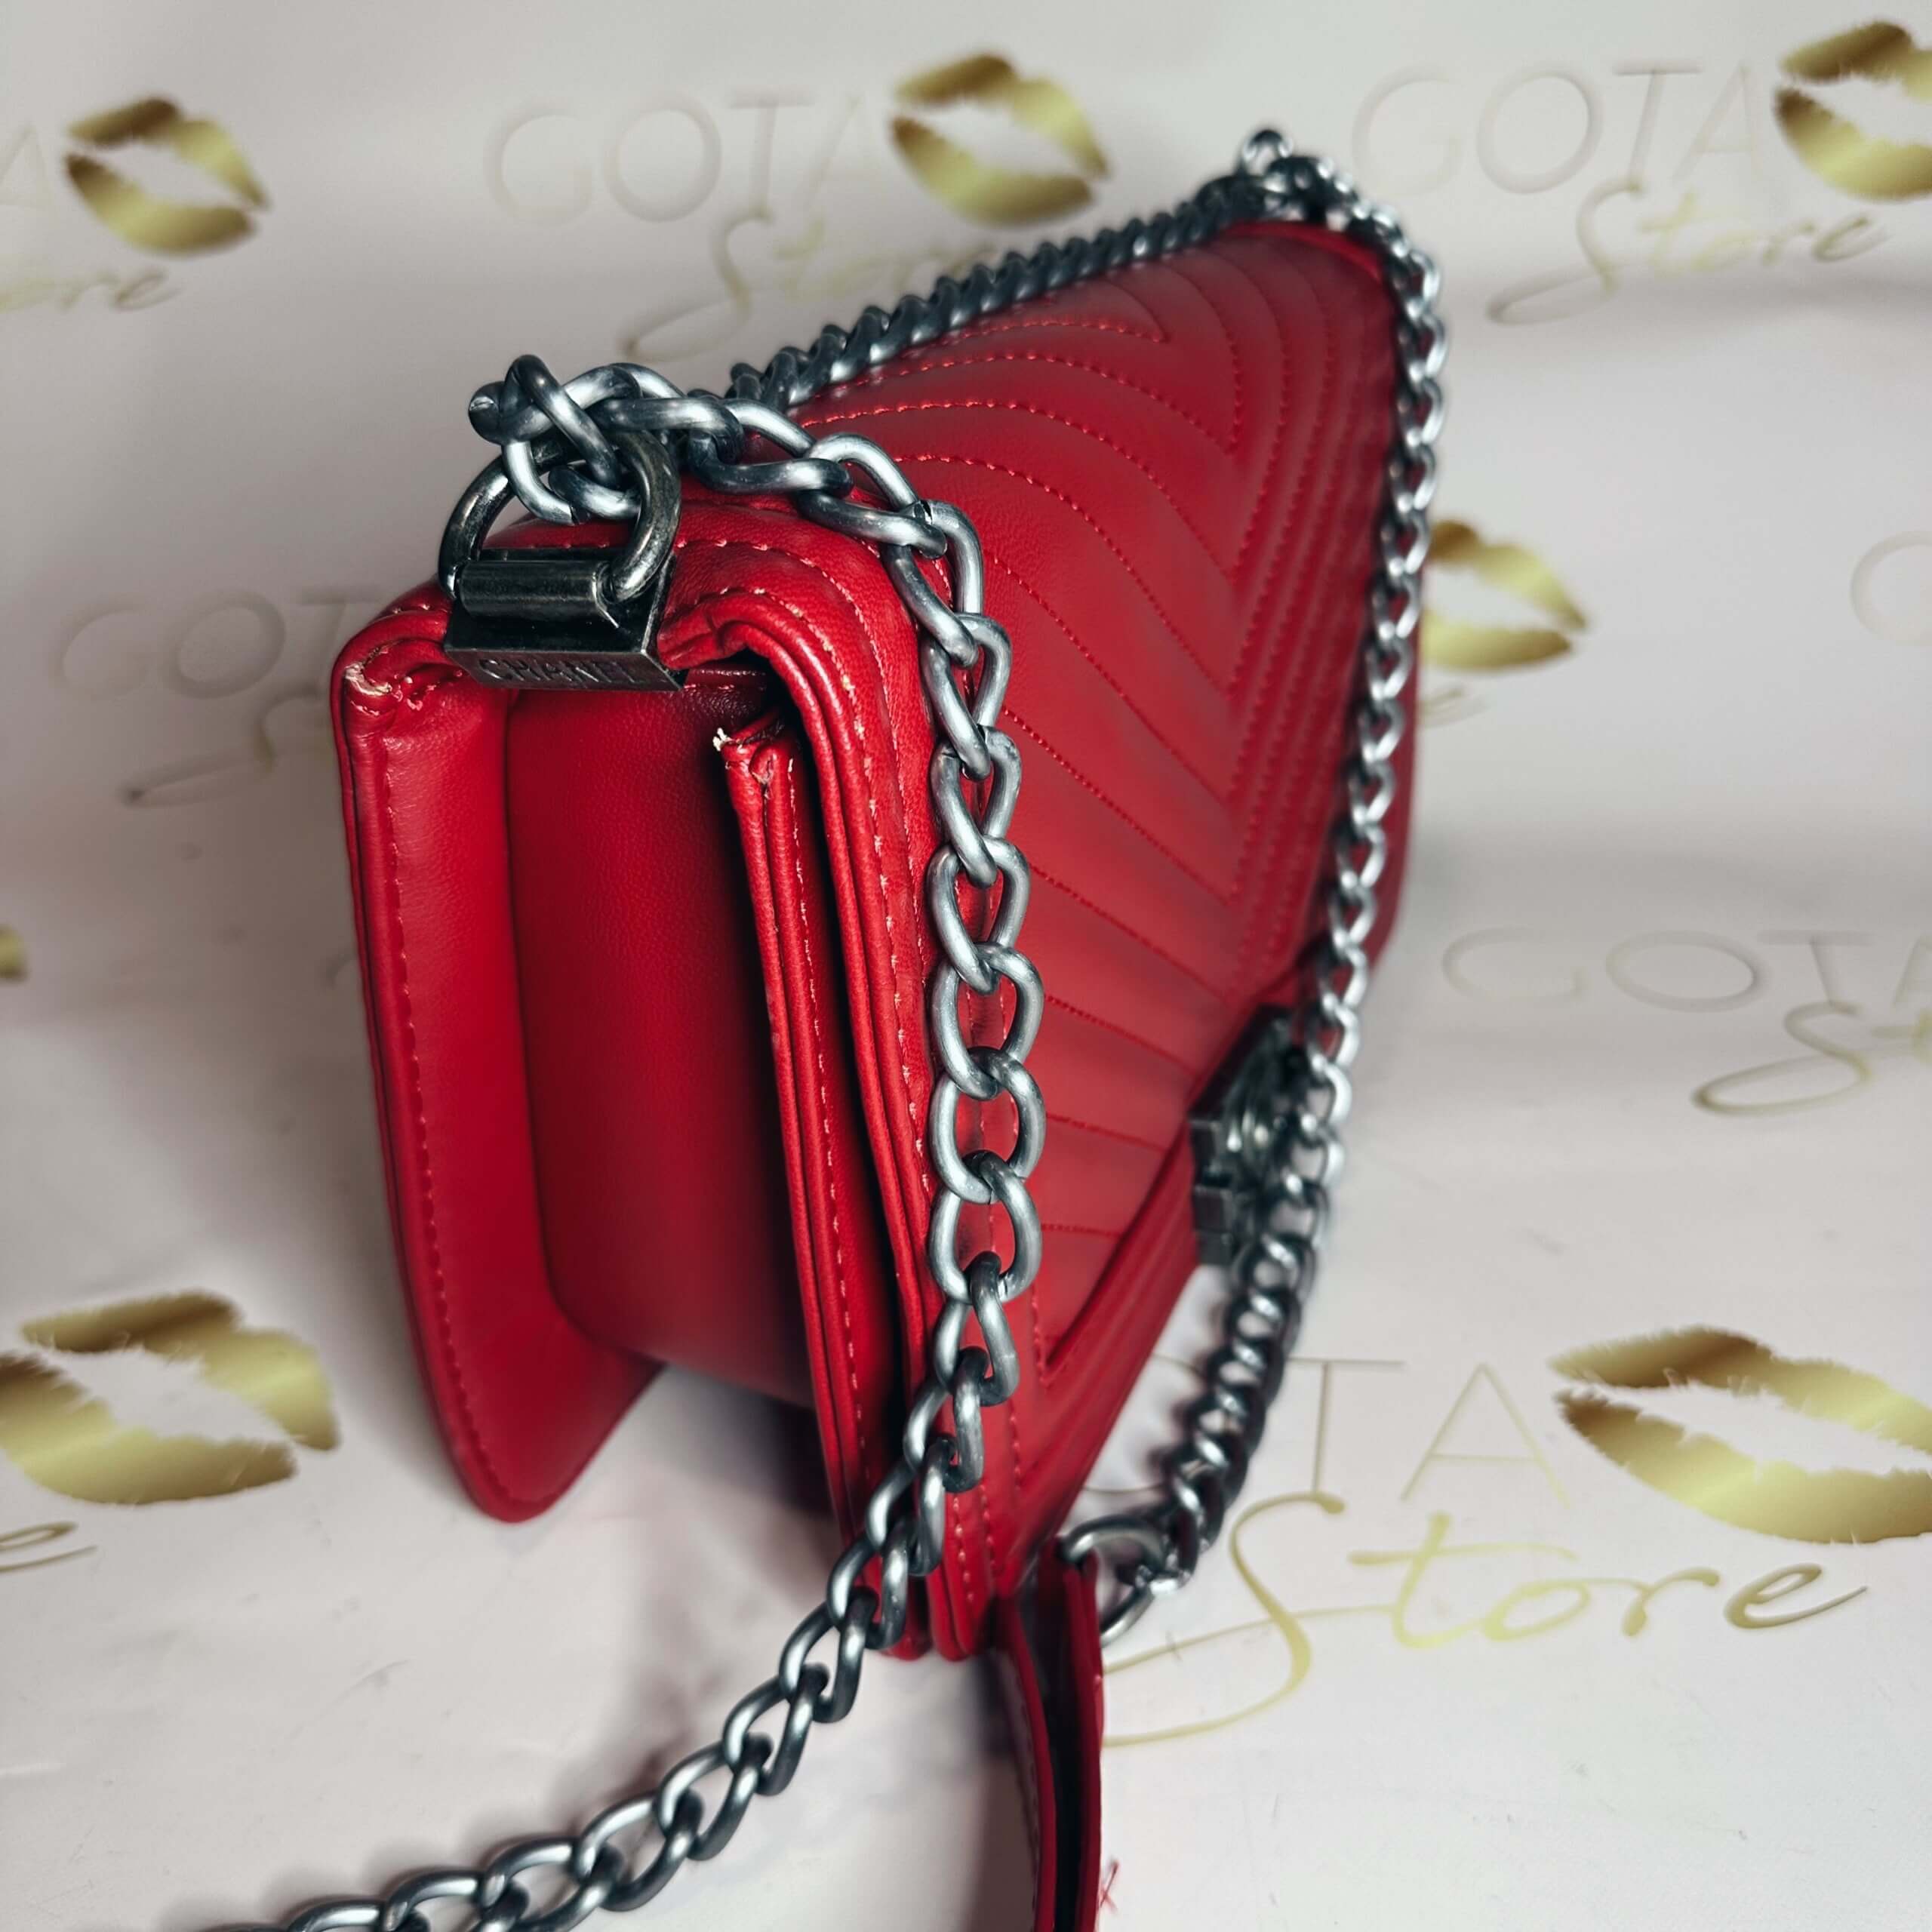 Boy Bag Purse - Red Leather Medium Shoulder Bag